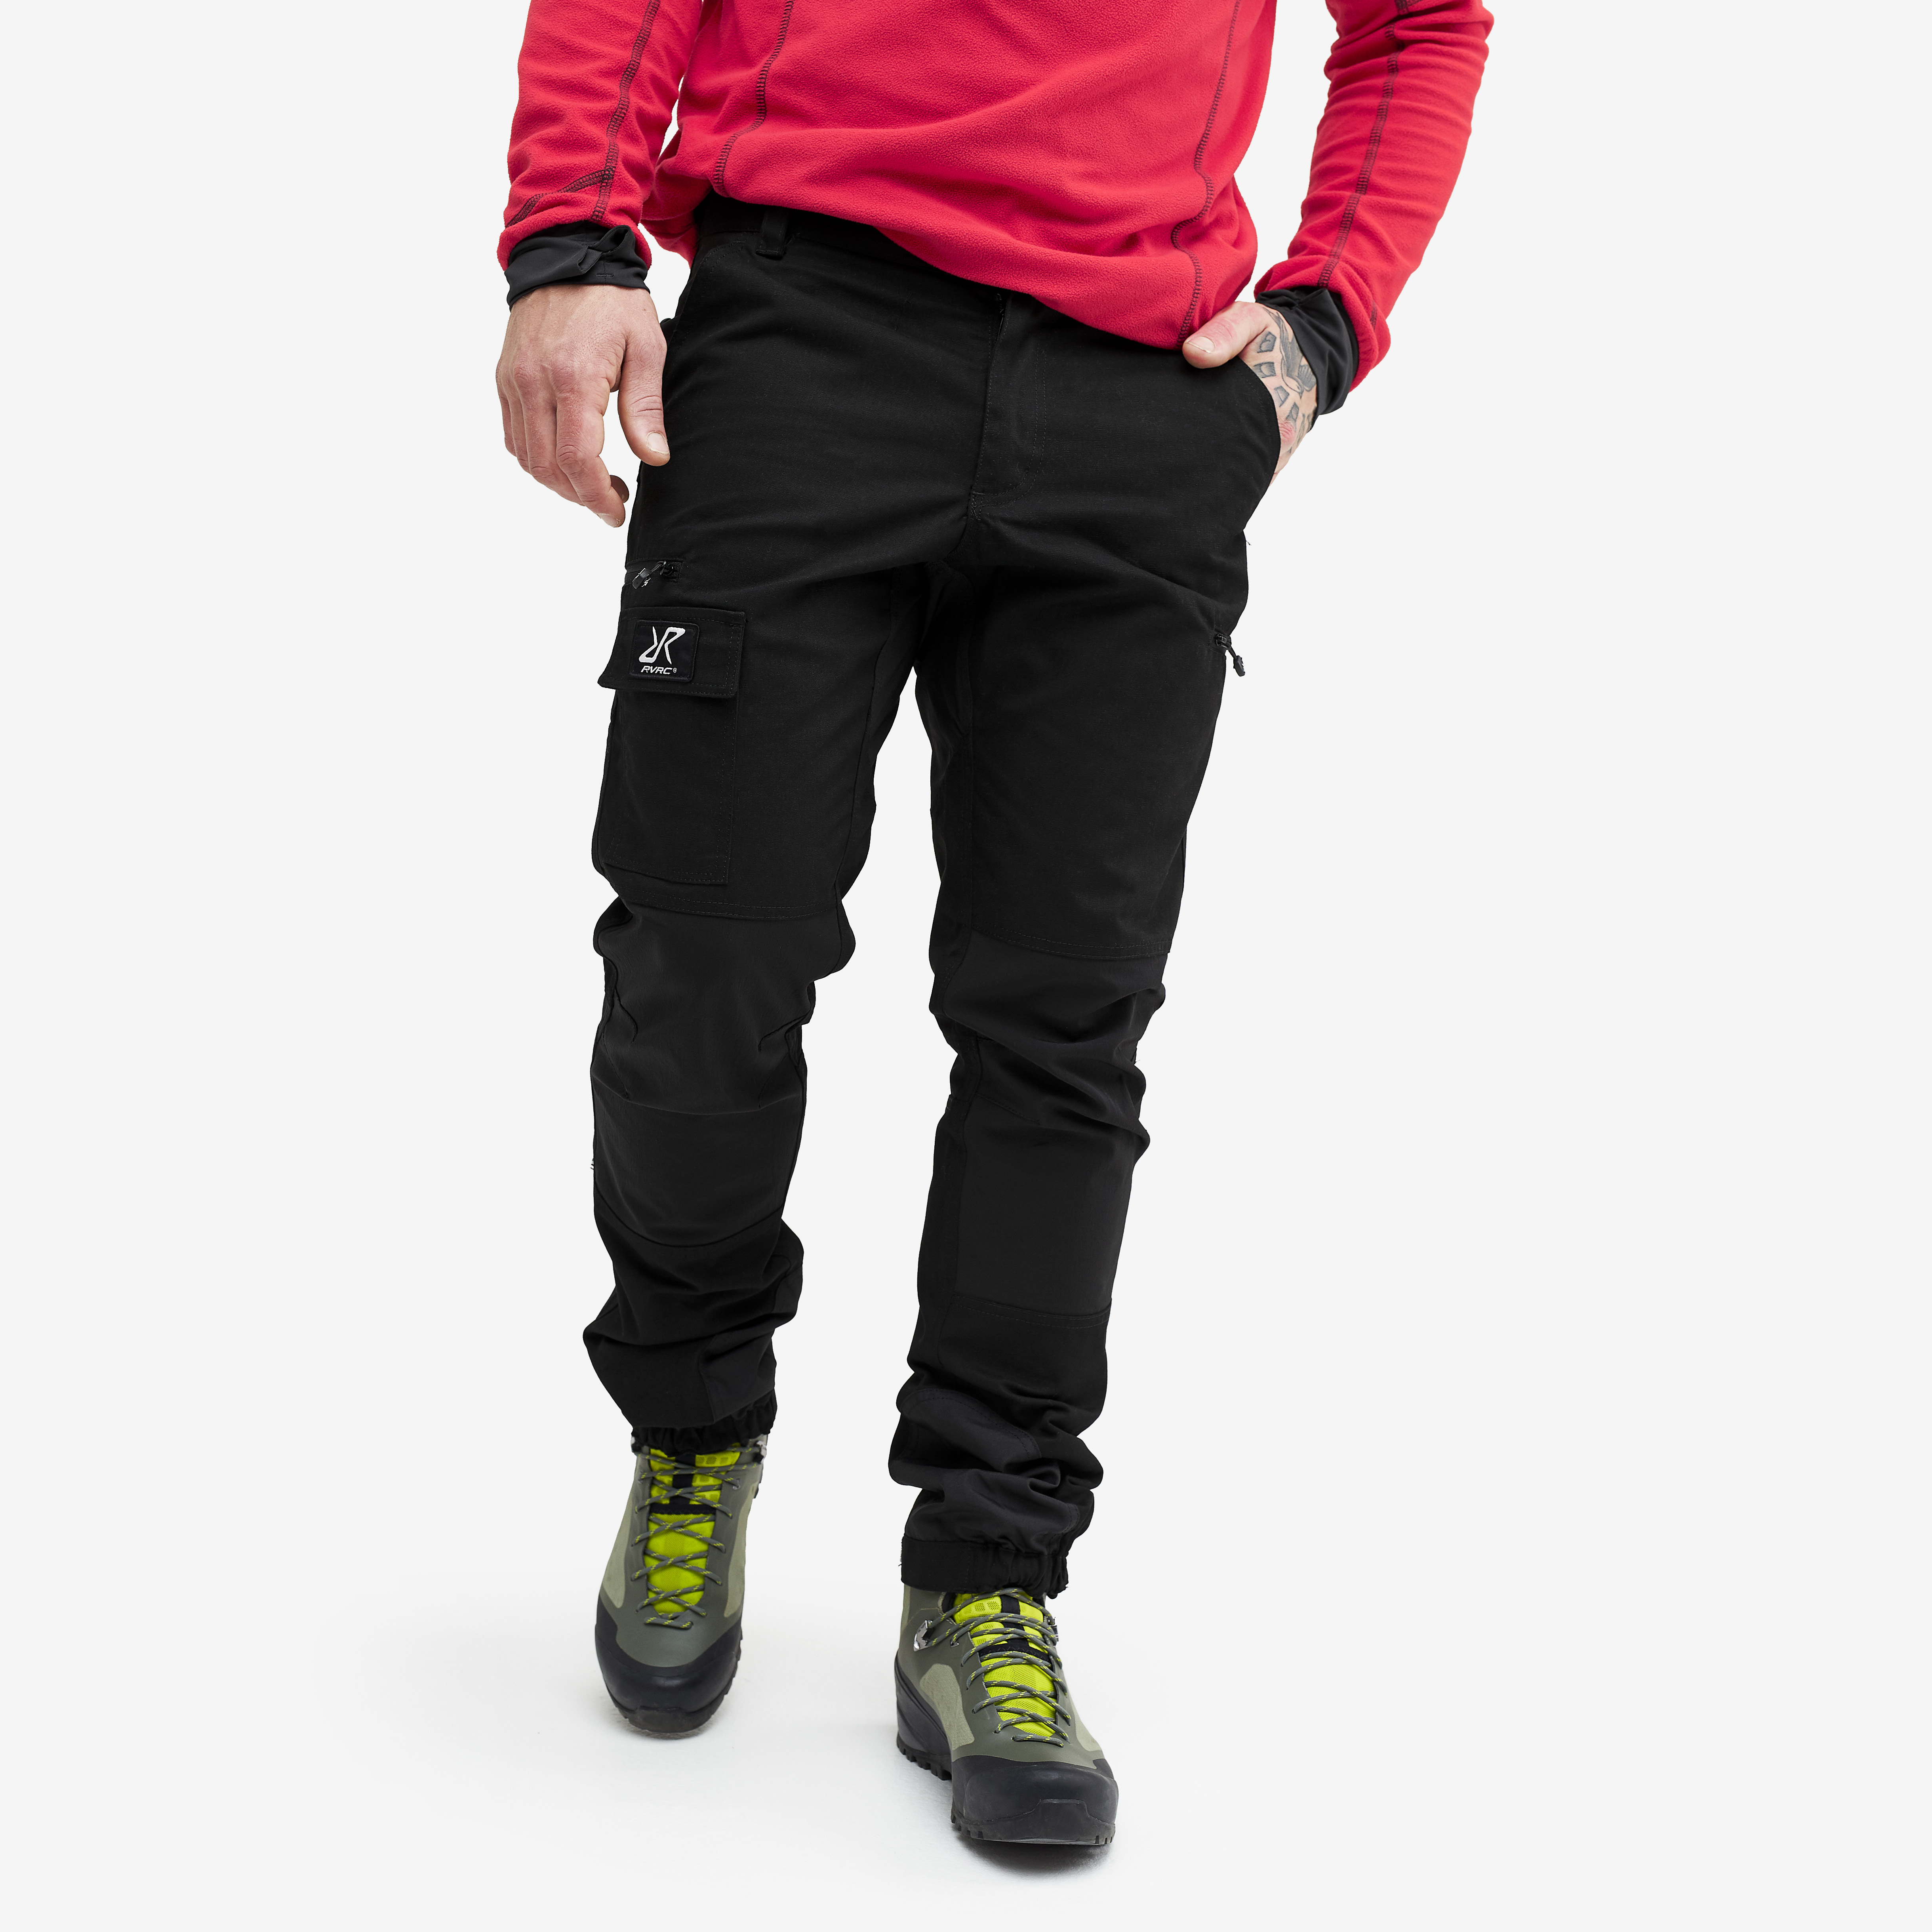 Nordwand outdoorové kalhoty pro muže v černé barvě